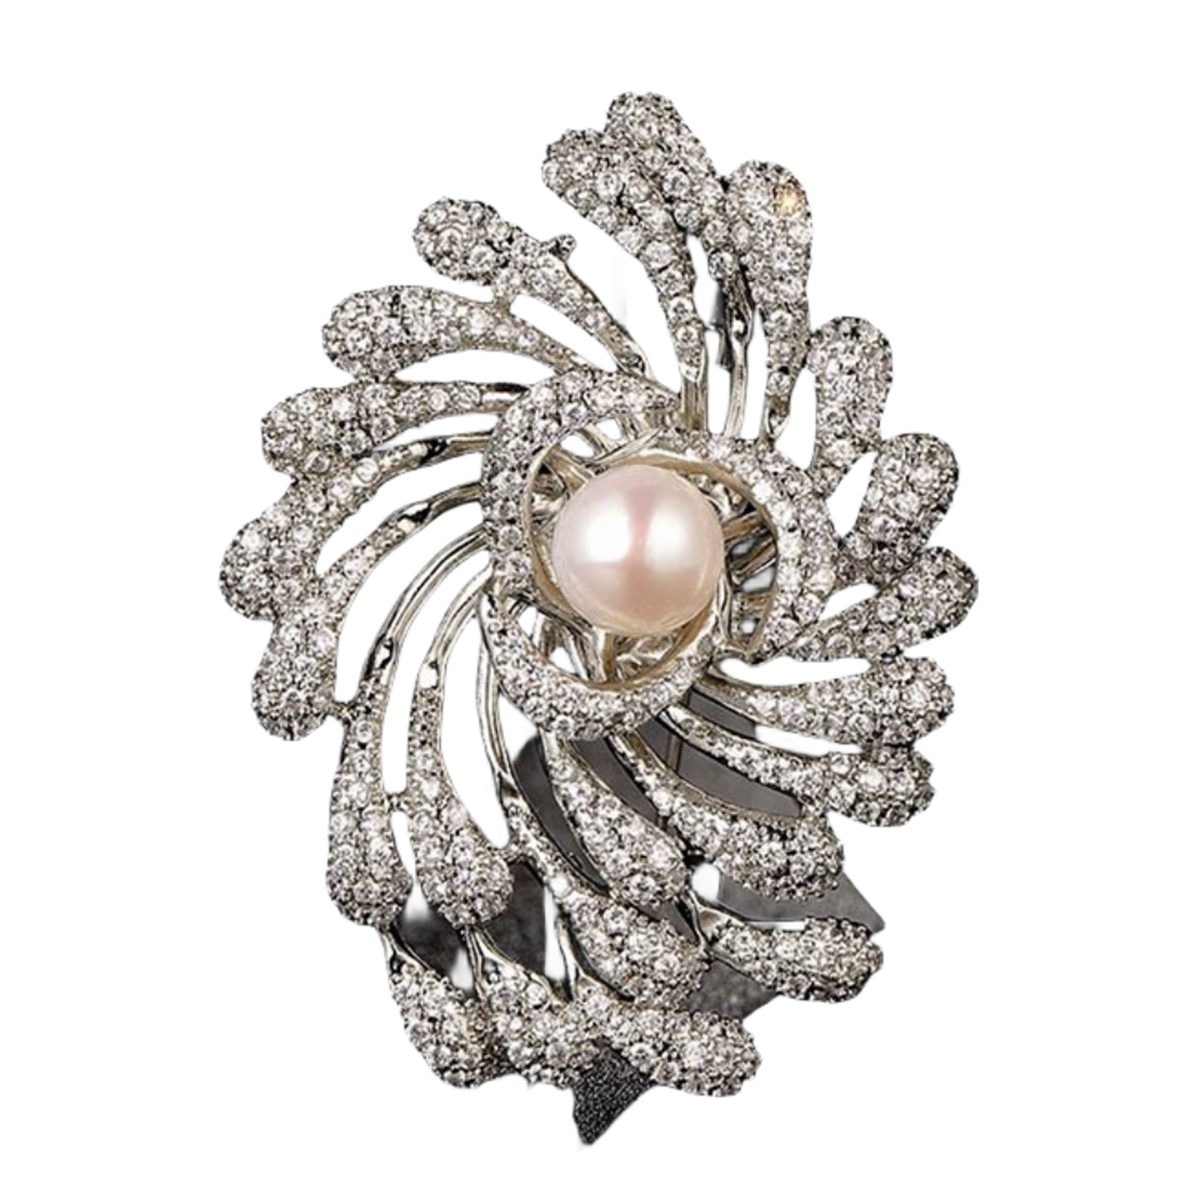 Zirkonen besetzt Vintage-Brosche und Feuerwerk Elegante Brosche mit Perlen Silber mit carefully selected